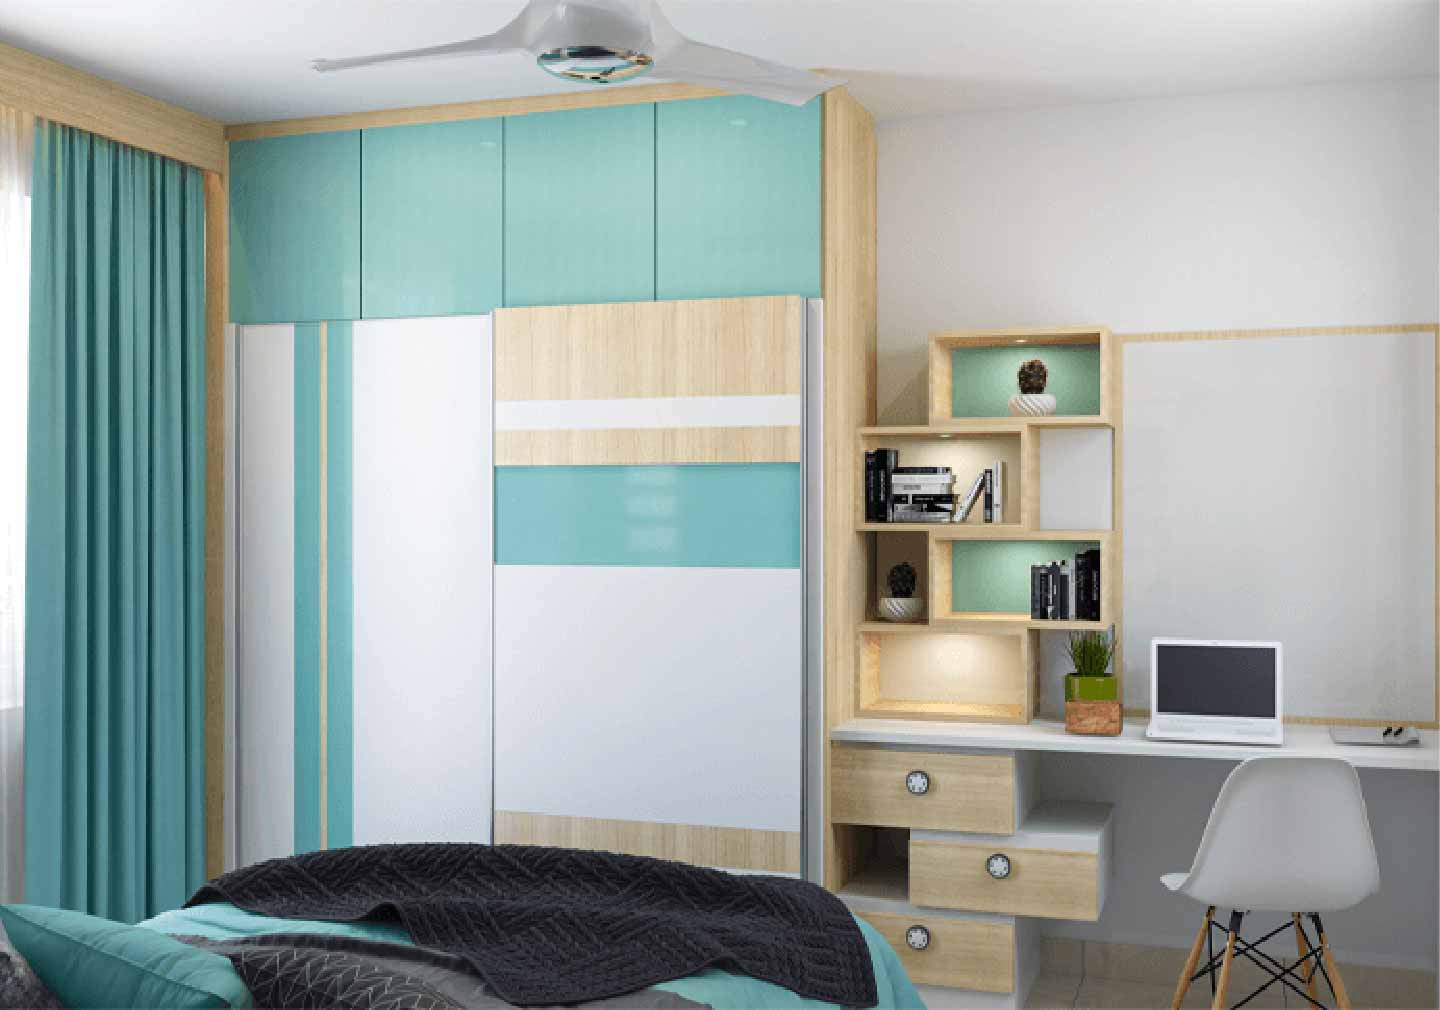 Study cum Bedroom - Bedroom Interior Design